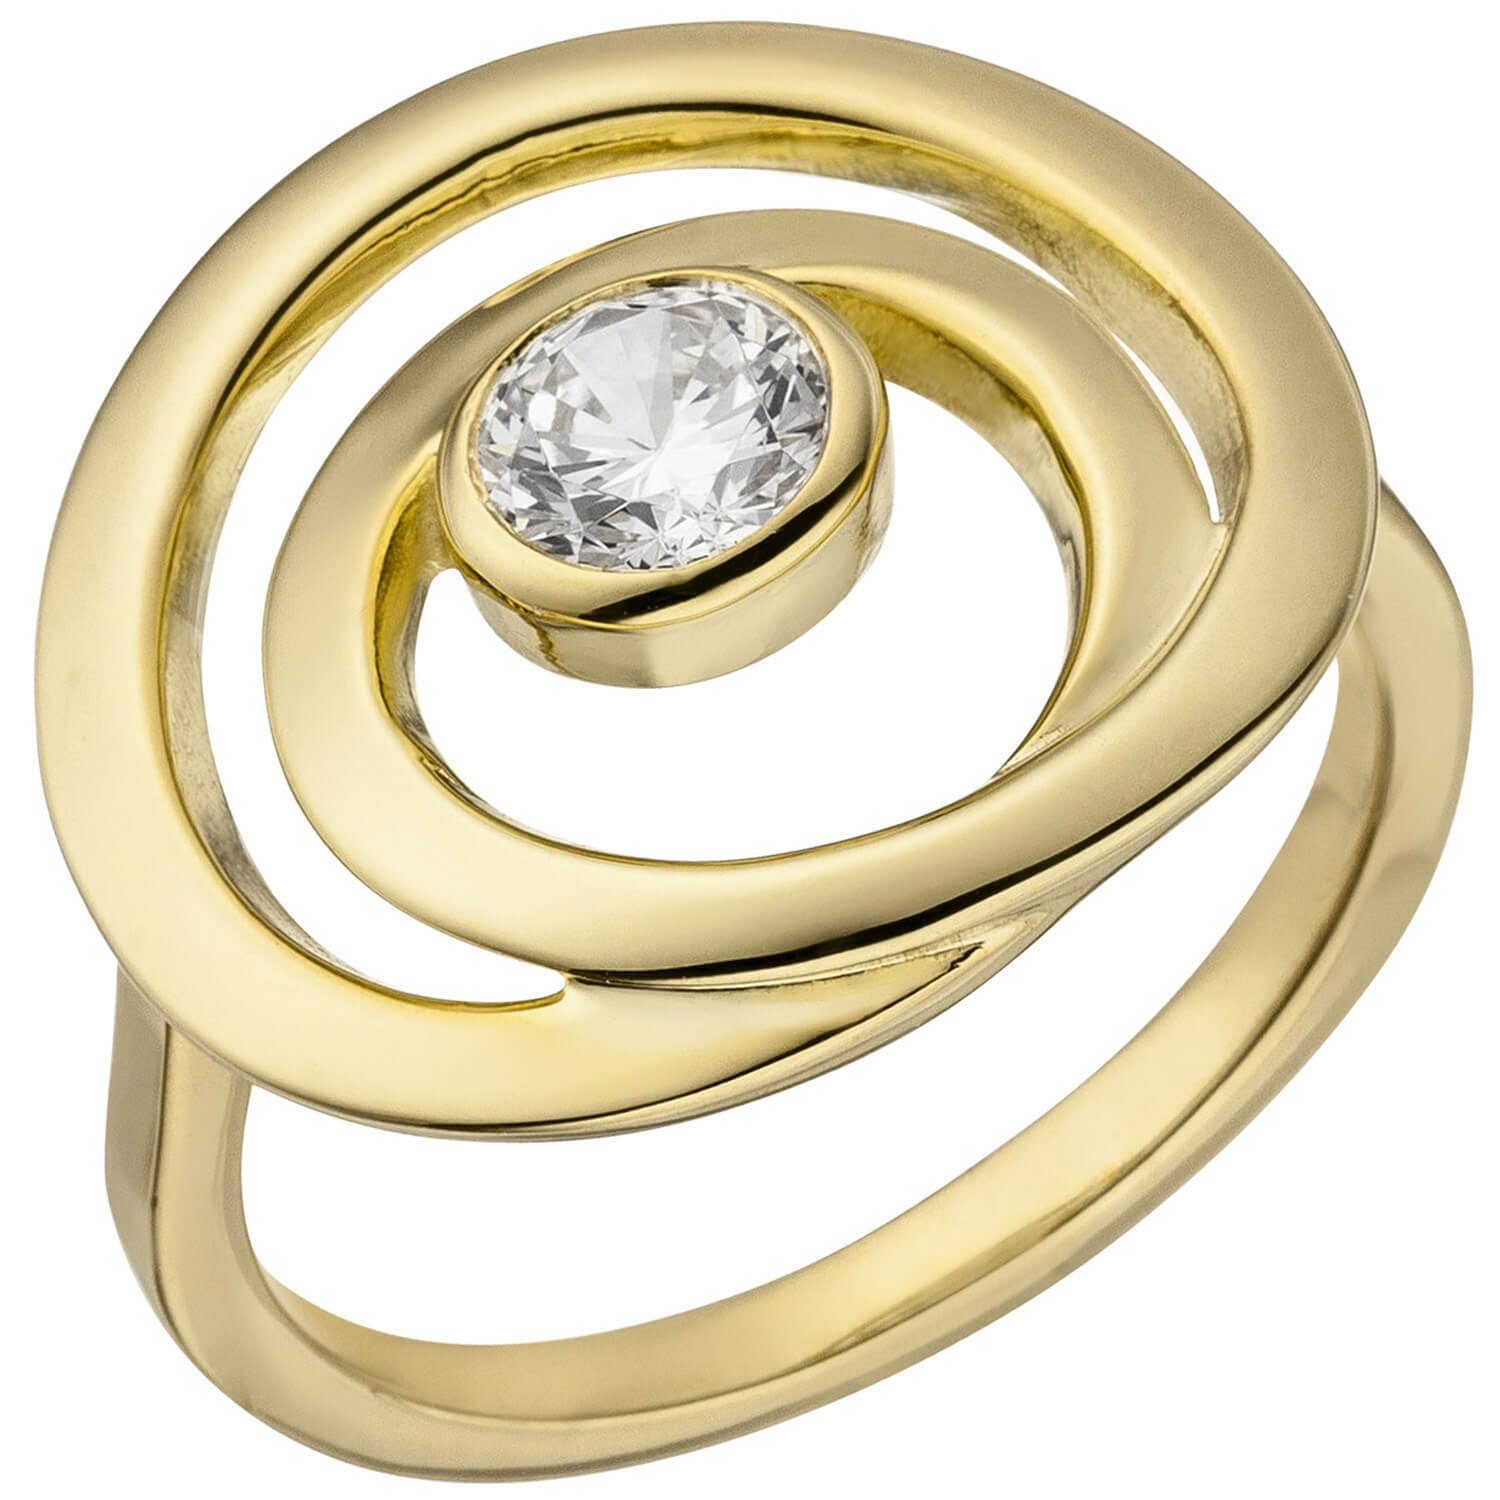 Schmuck Krone Silberring Damenring Spirale, einer vergoldet, eleganter weißer Silber Zirkonia Silber Ring in 925 925